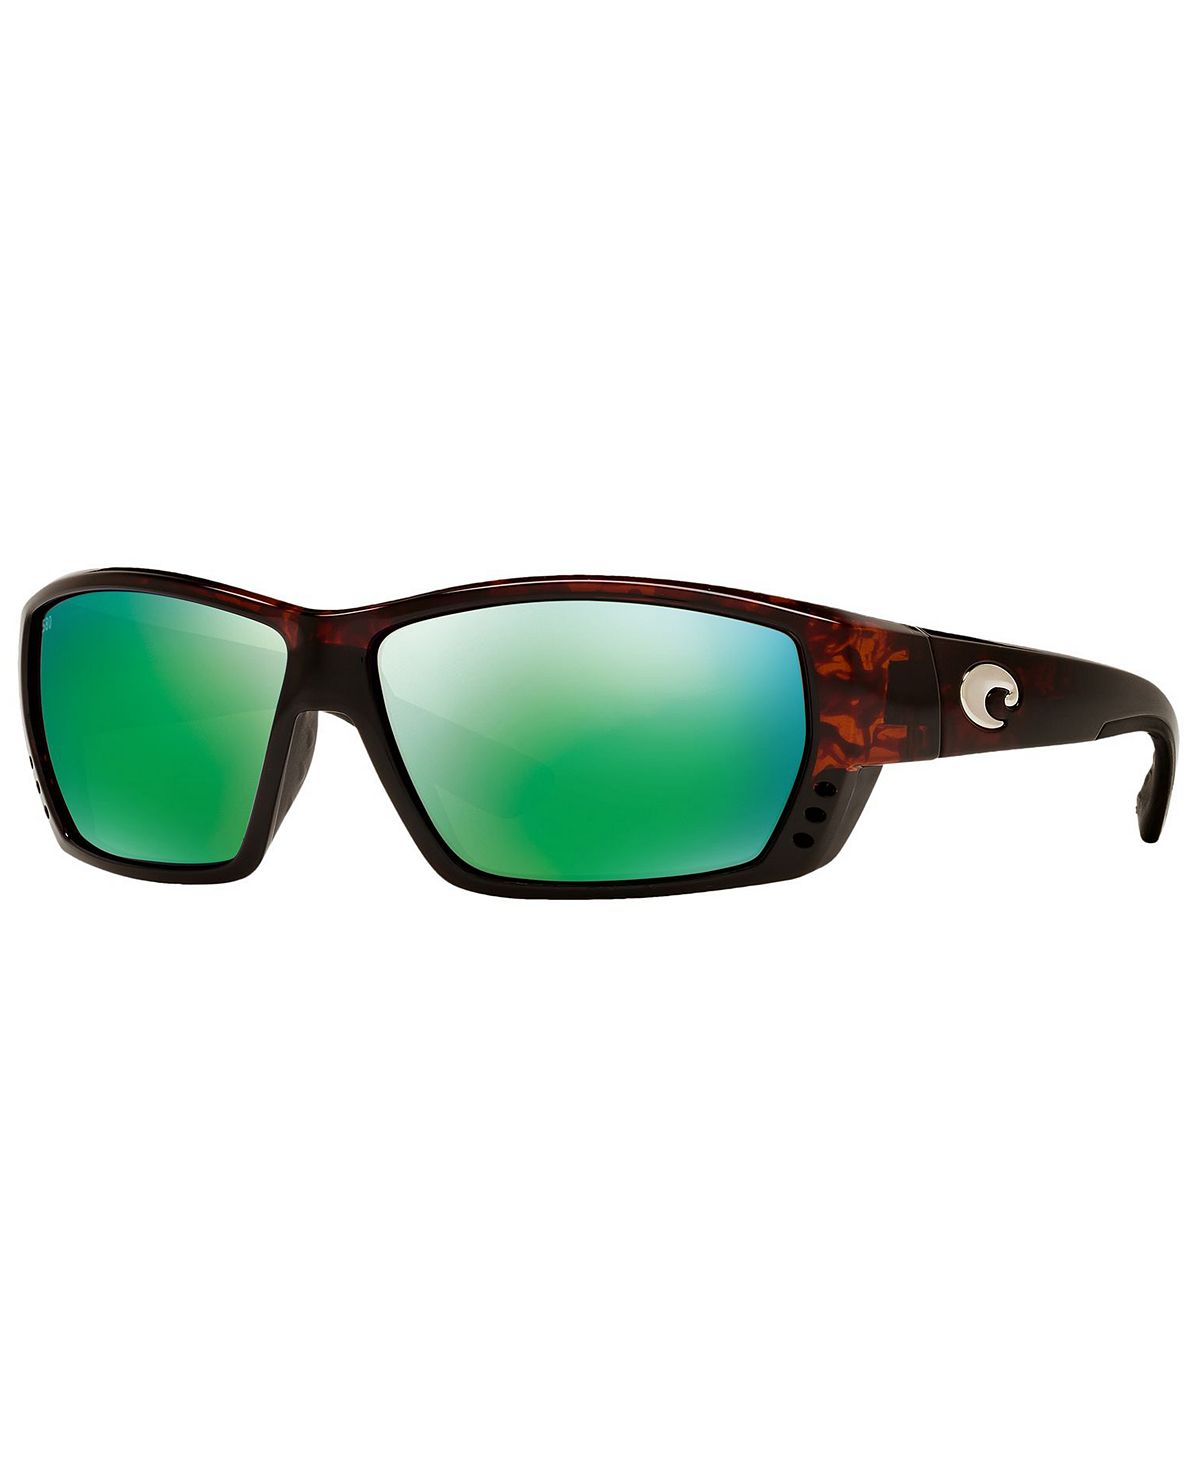 costa del mar permit 580 p tortoise green mirror Мужские поляризованные солнцезащитные очки, Tuna Alley Costa Del Mar